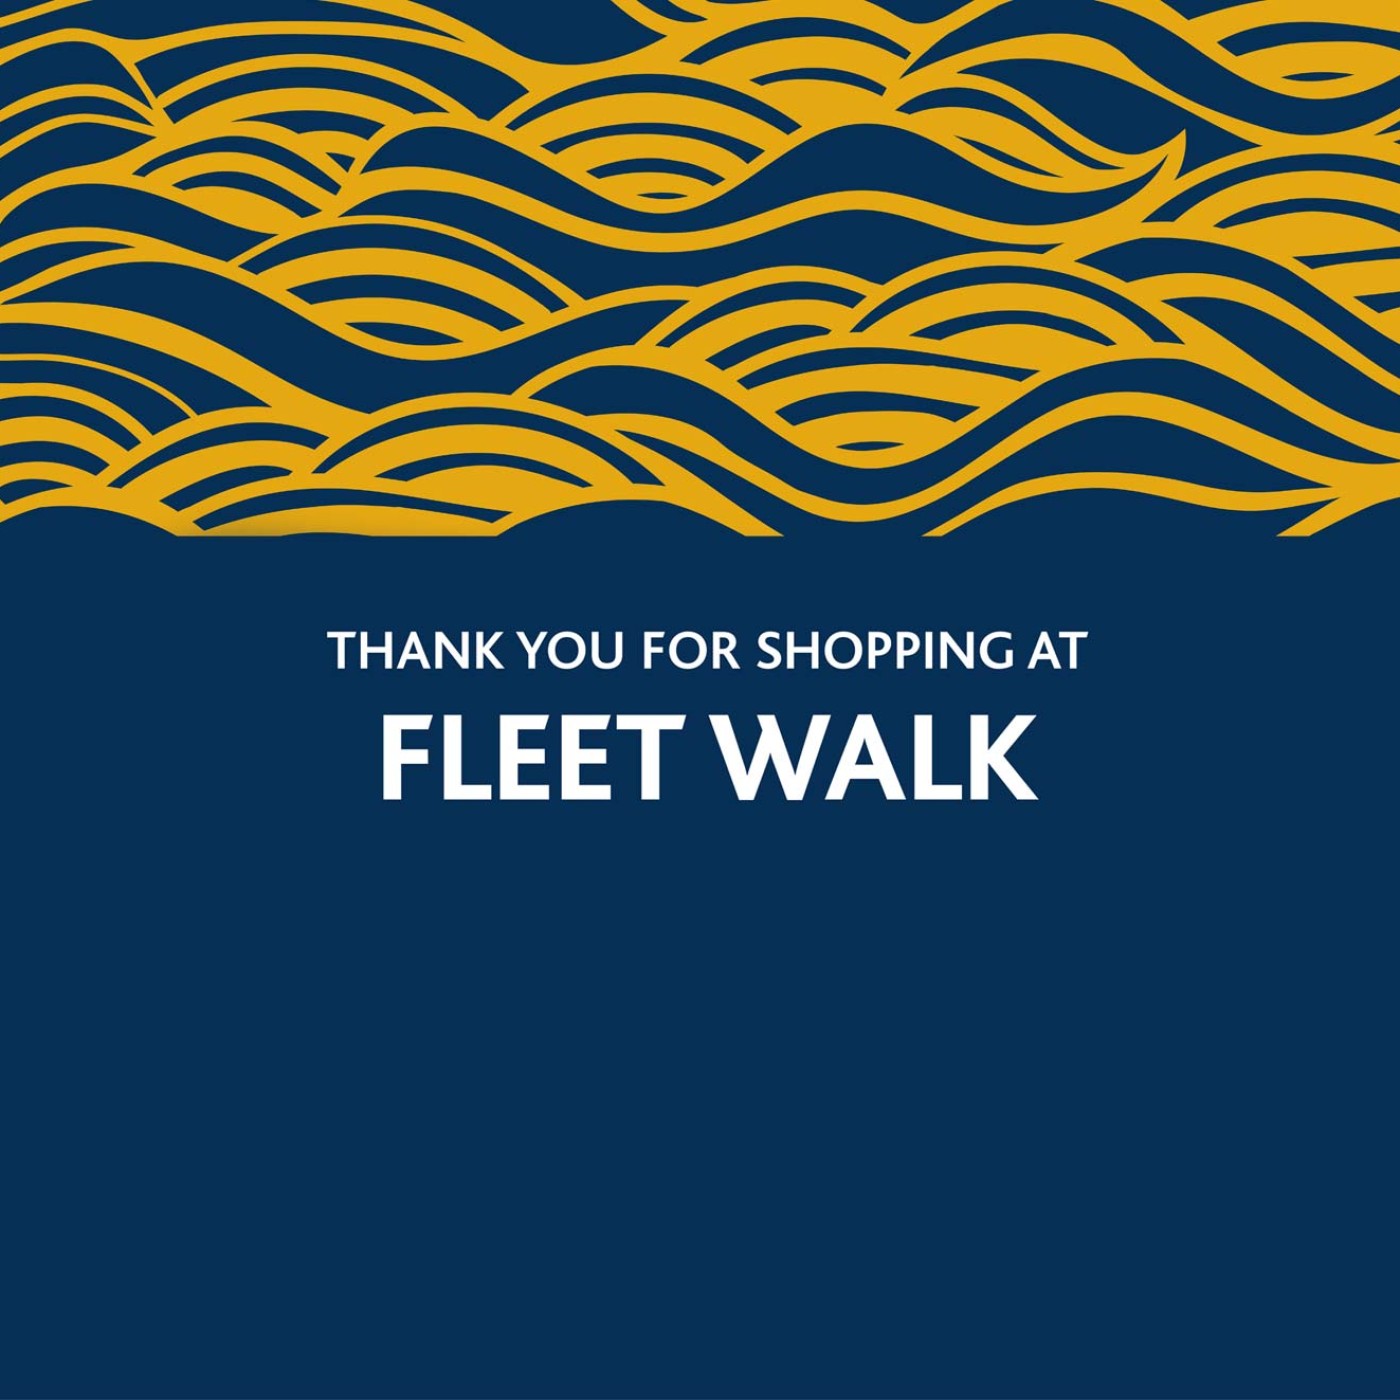 Fleet Walk